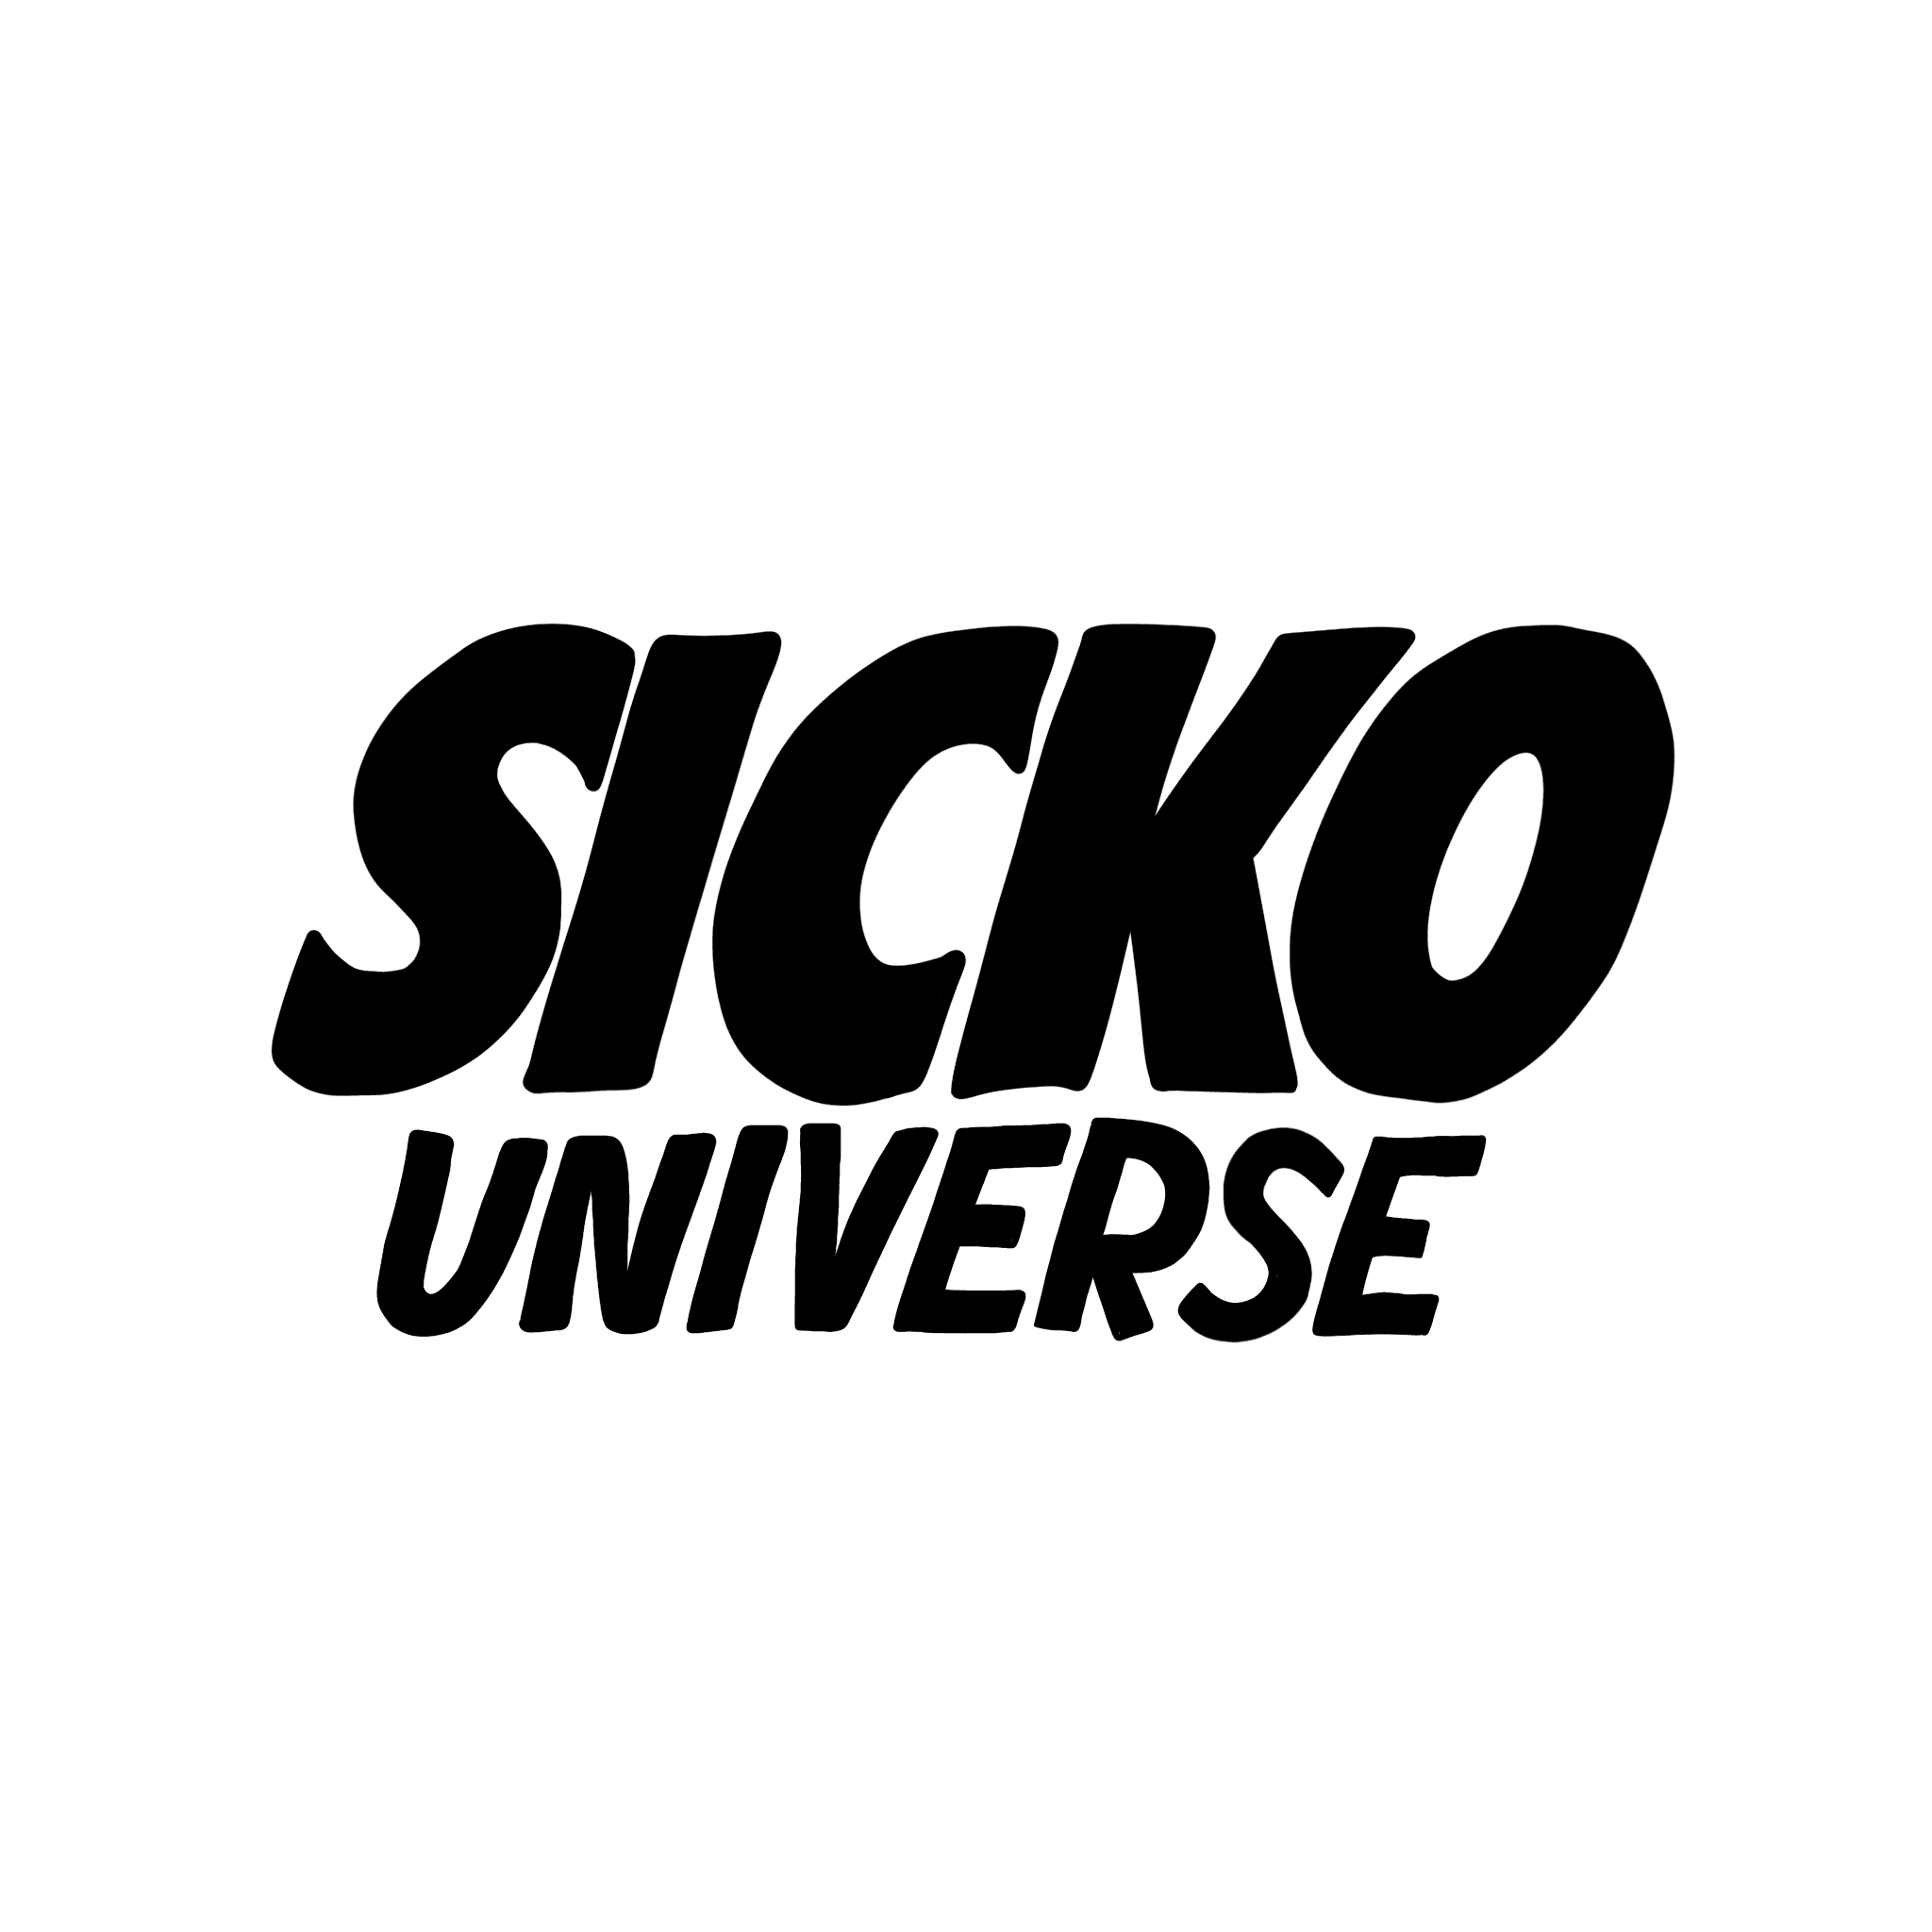 SICKO_UNIVERSE